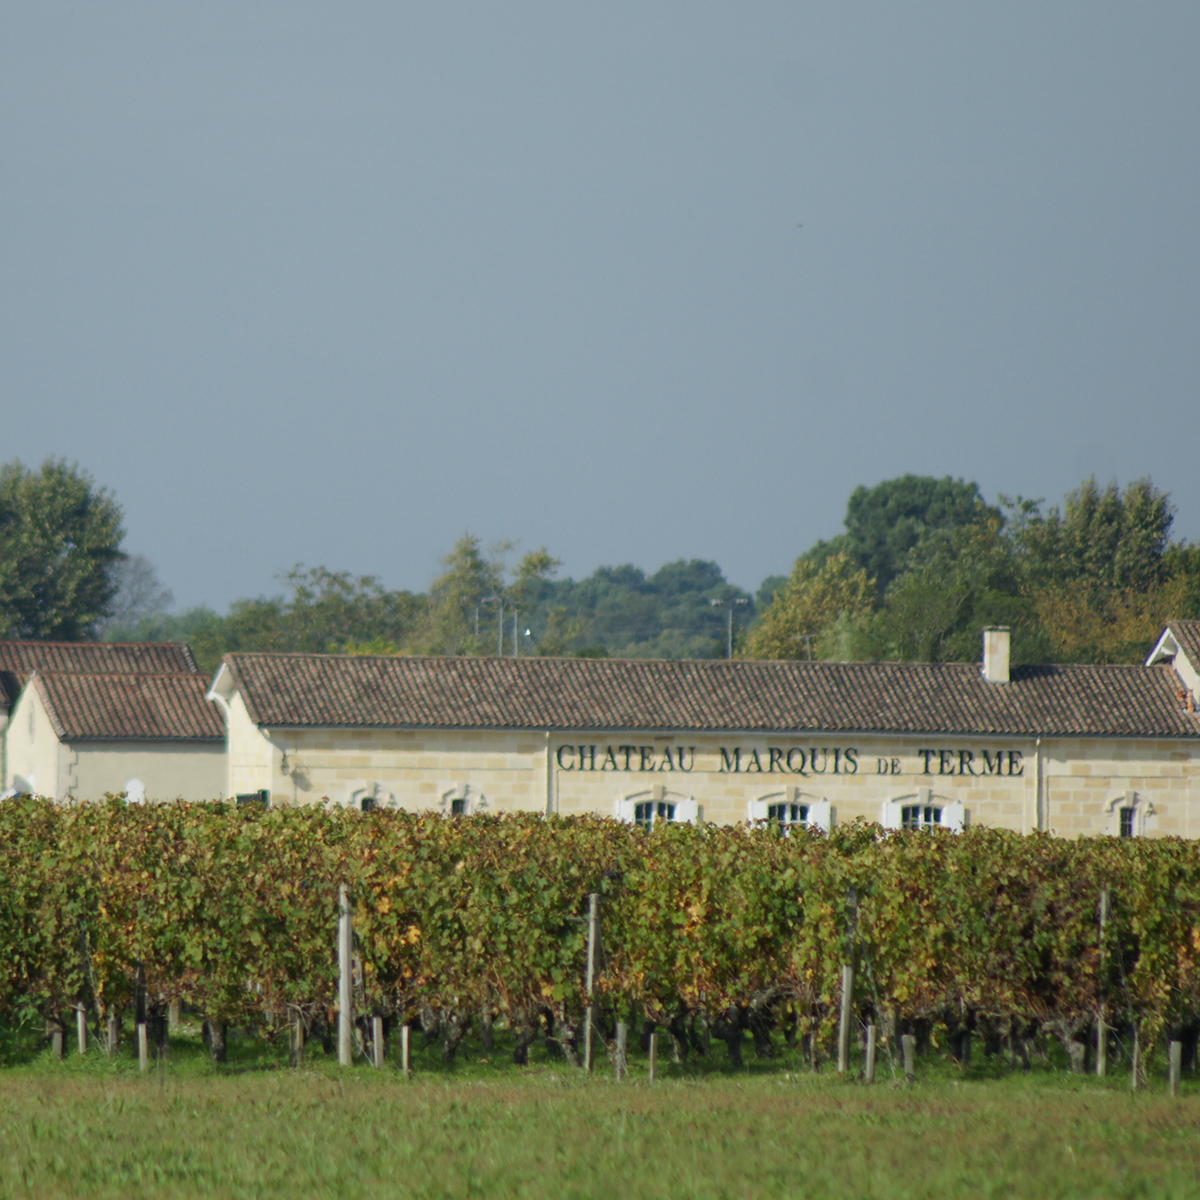 Weinraritäten Terme kaufen Chateau 2001 🍷 Marquis online Antikwein de -